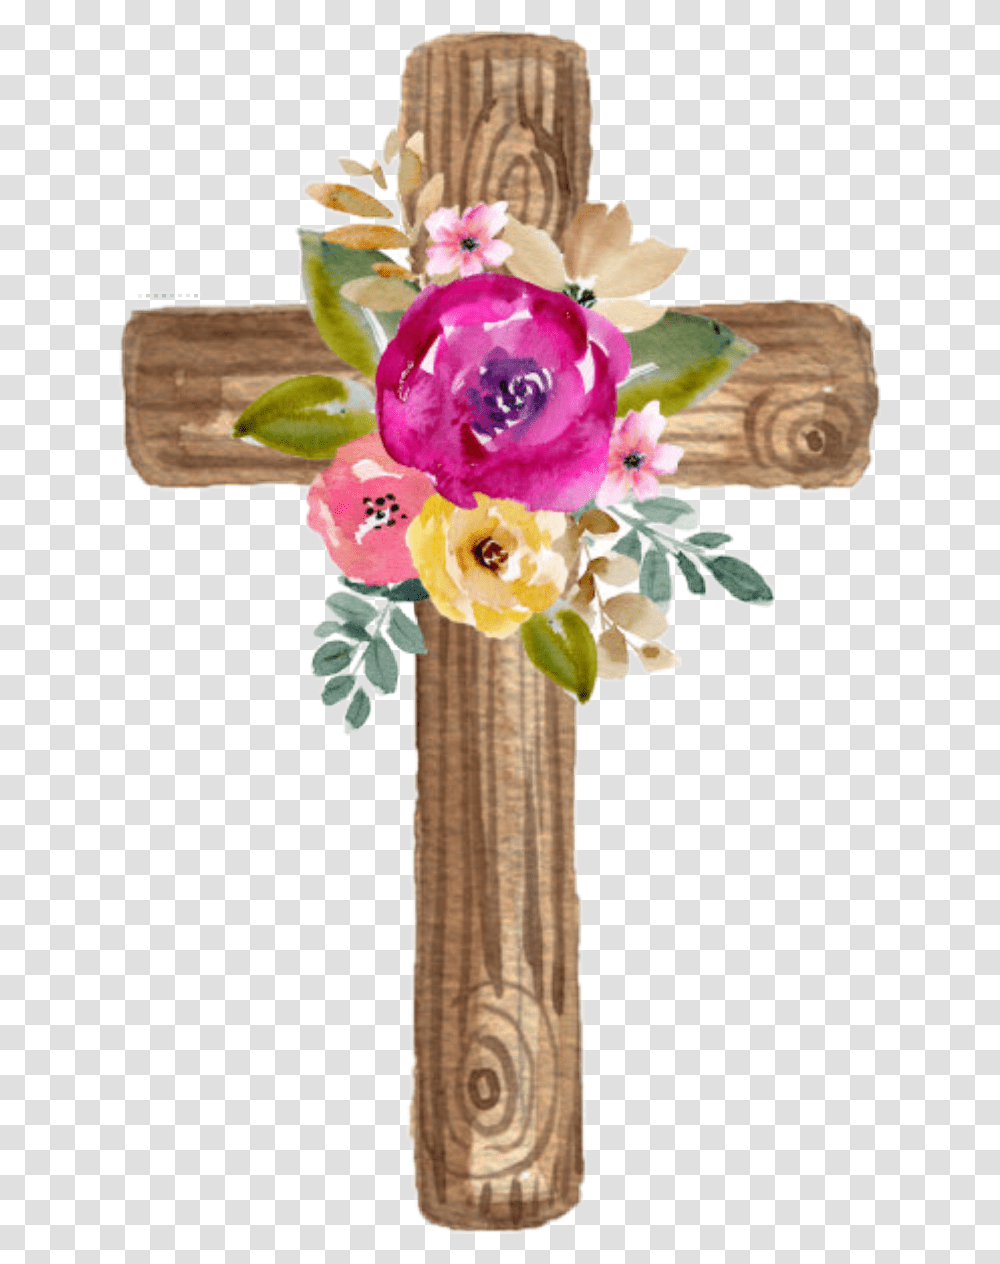 Watercolor Cross Wooden Flowers Floral Jesus Watercolor Cross With Flowers, Plant, Blossom, Flower Arrangement Transparent Png